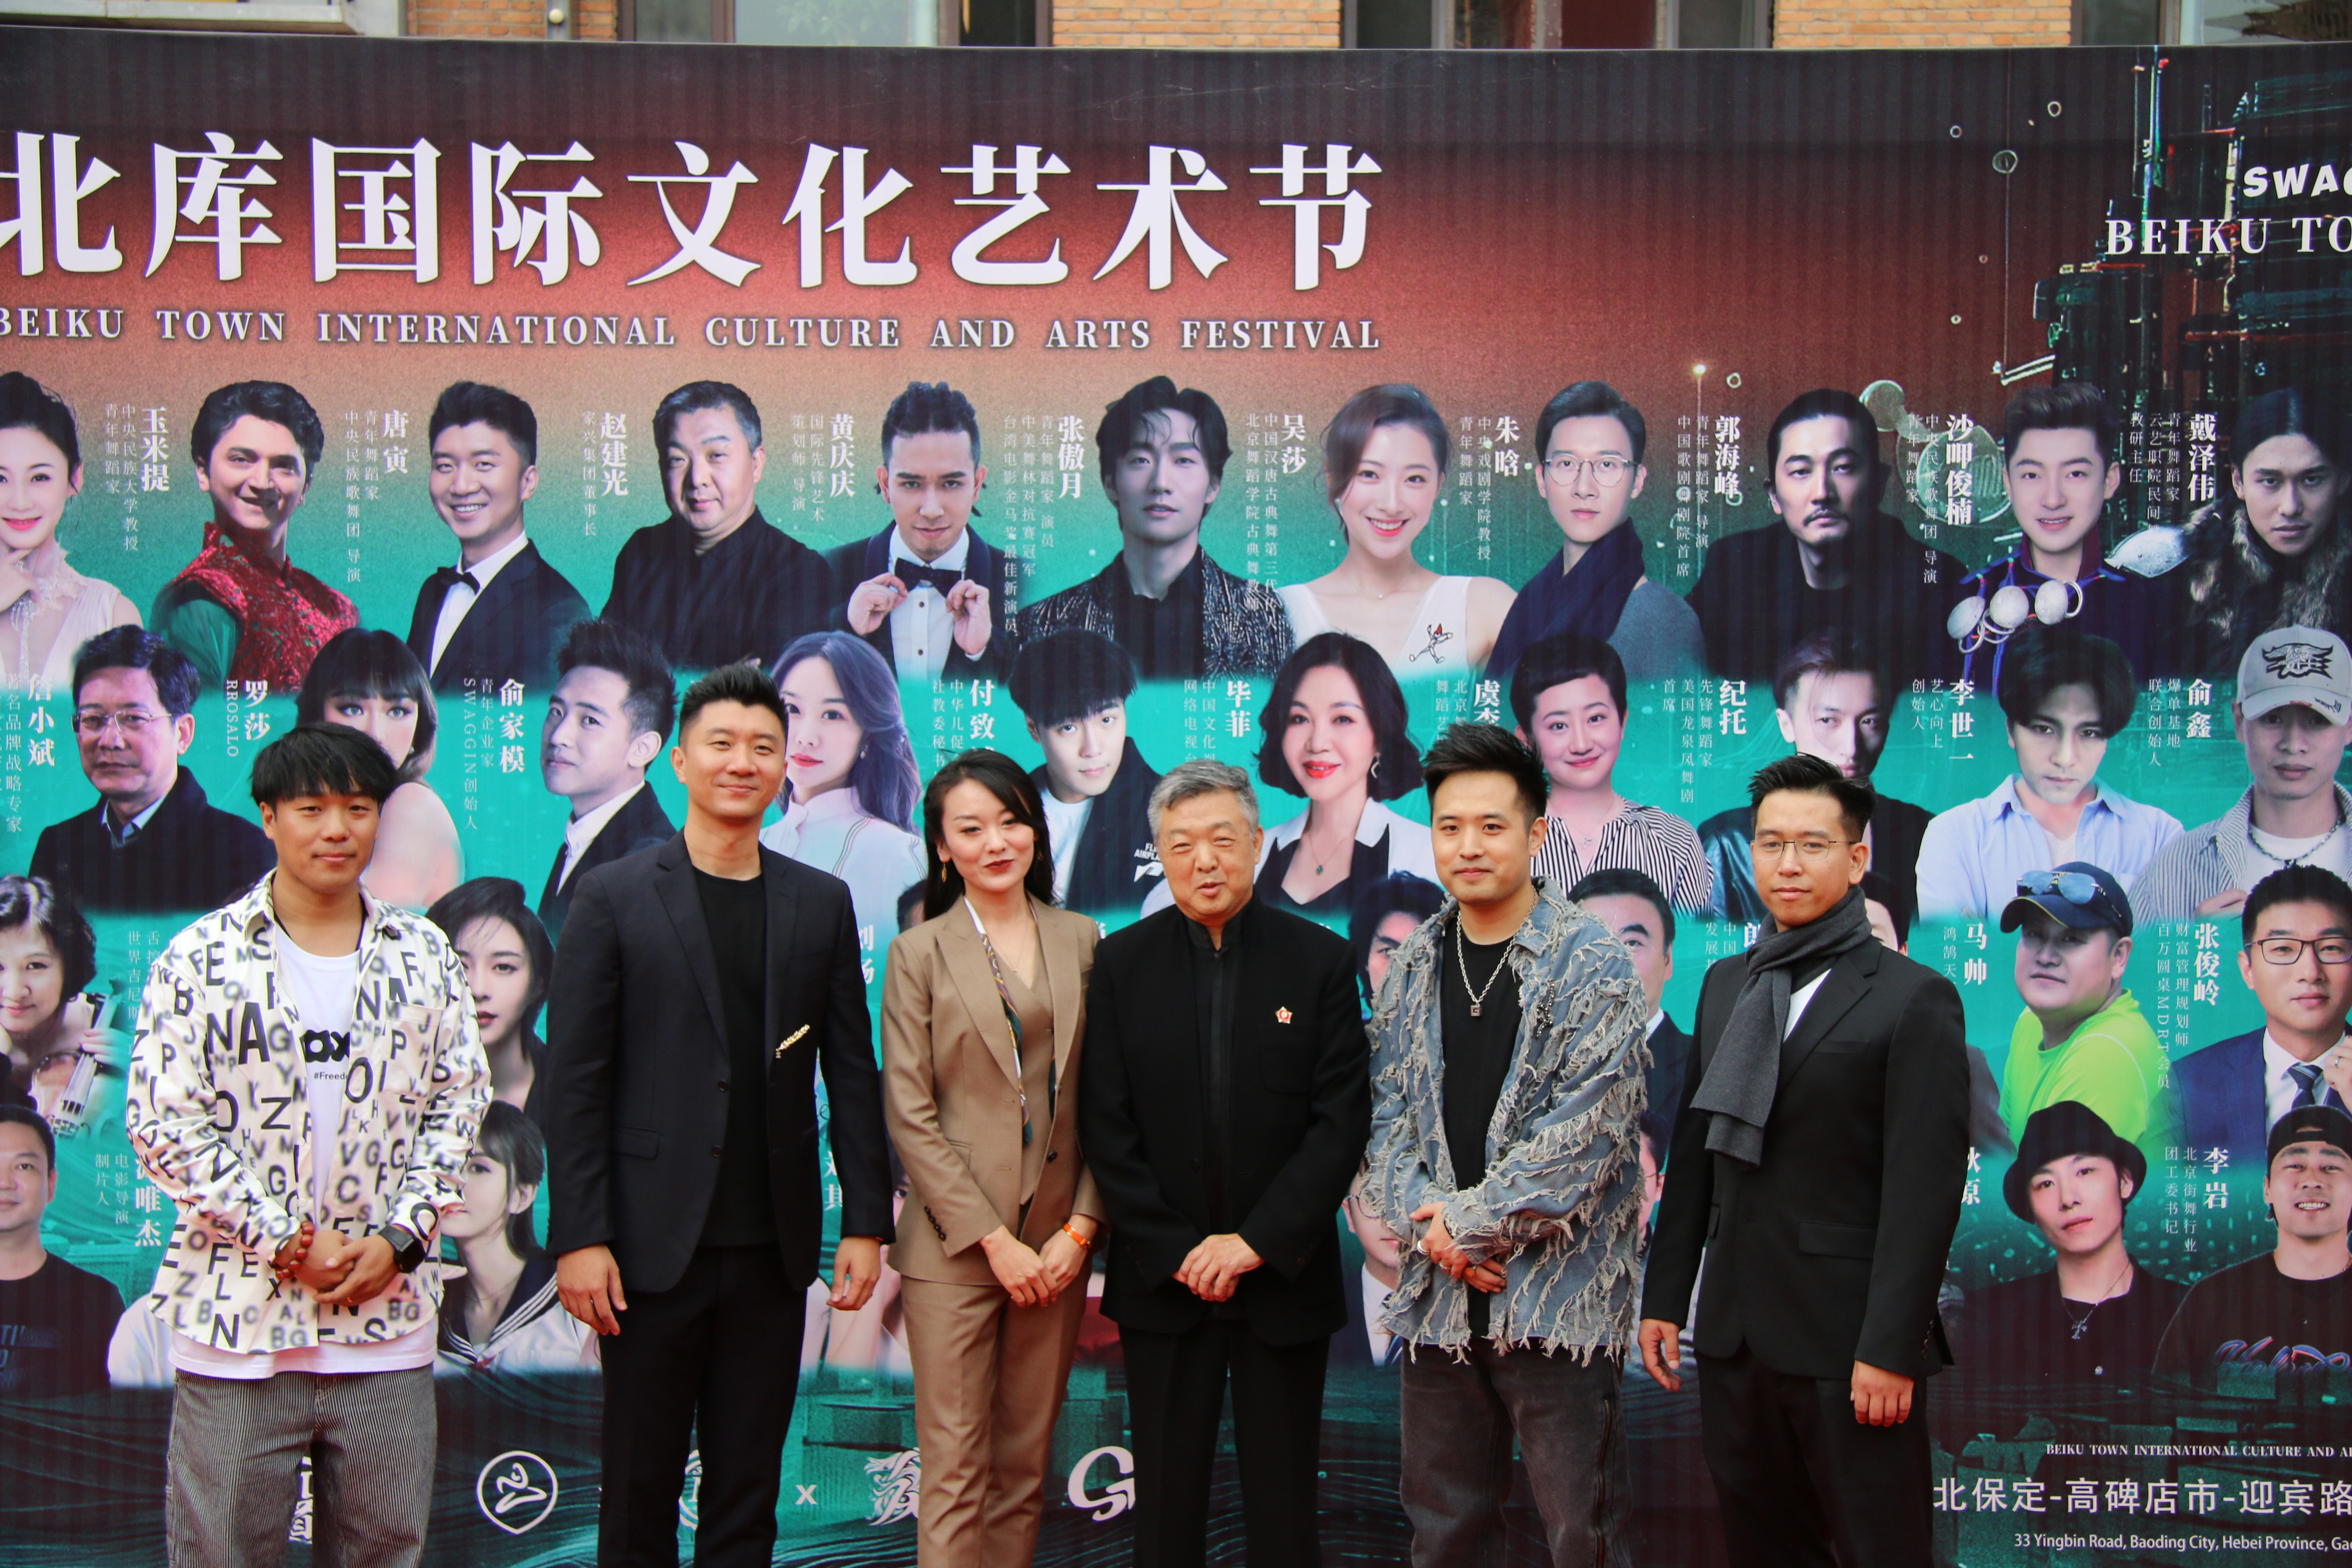 赵建光董事长与此次艺术节活动五位发起人红毯后在背景墙前合影